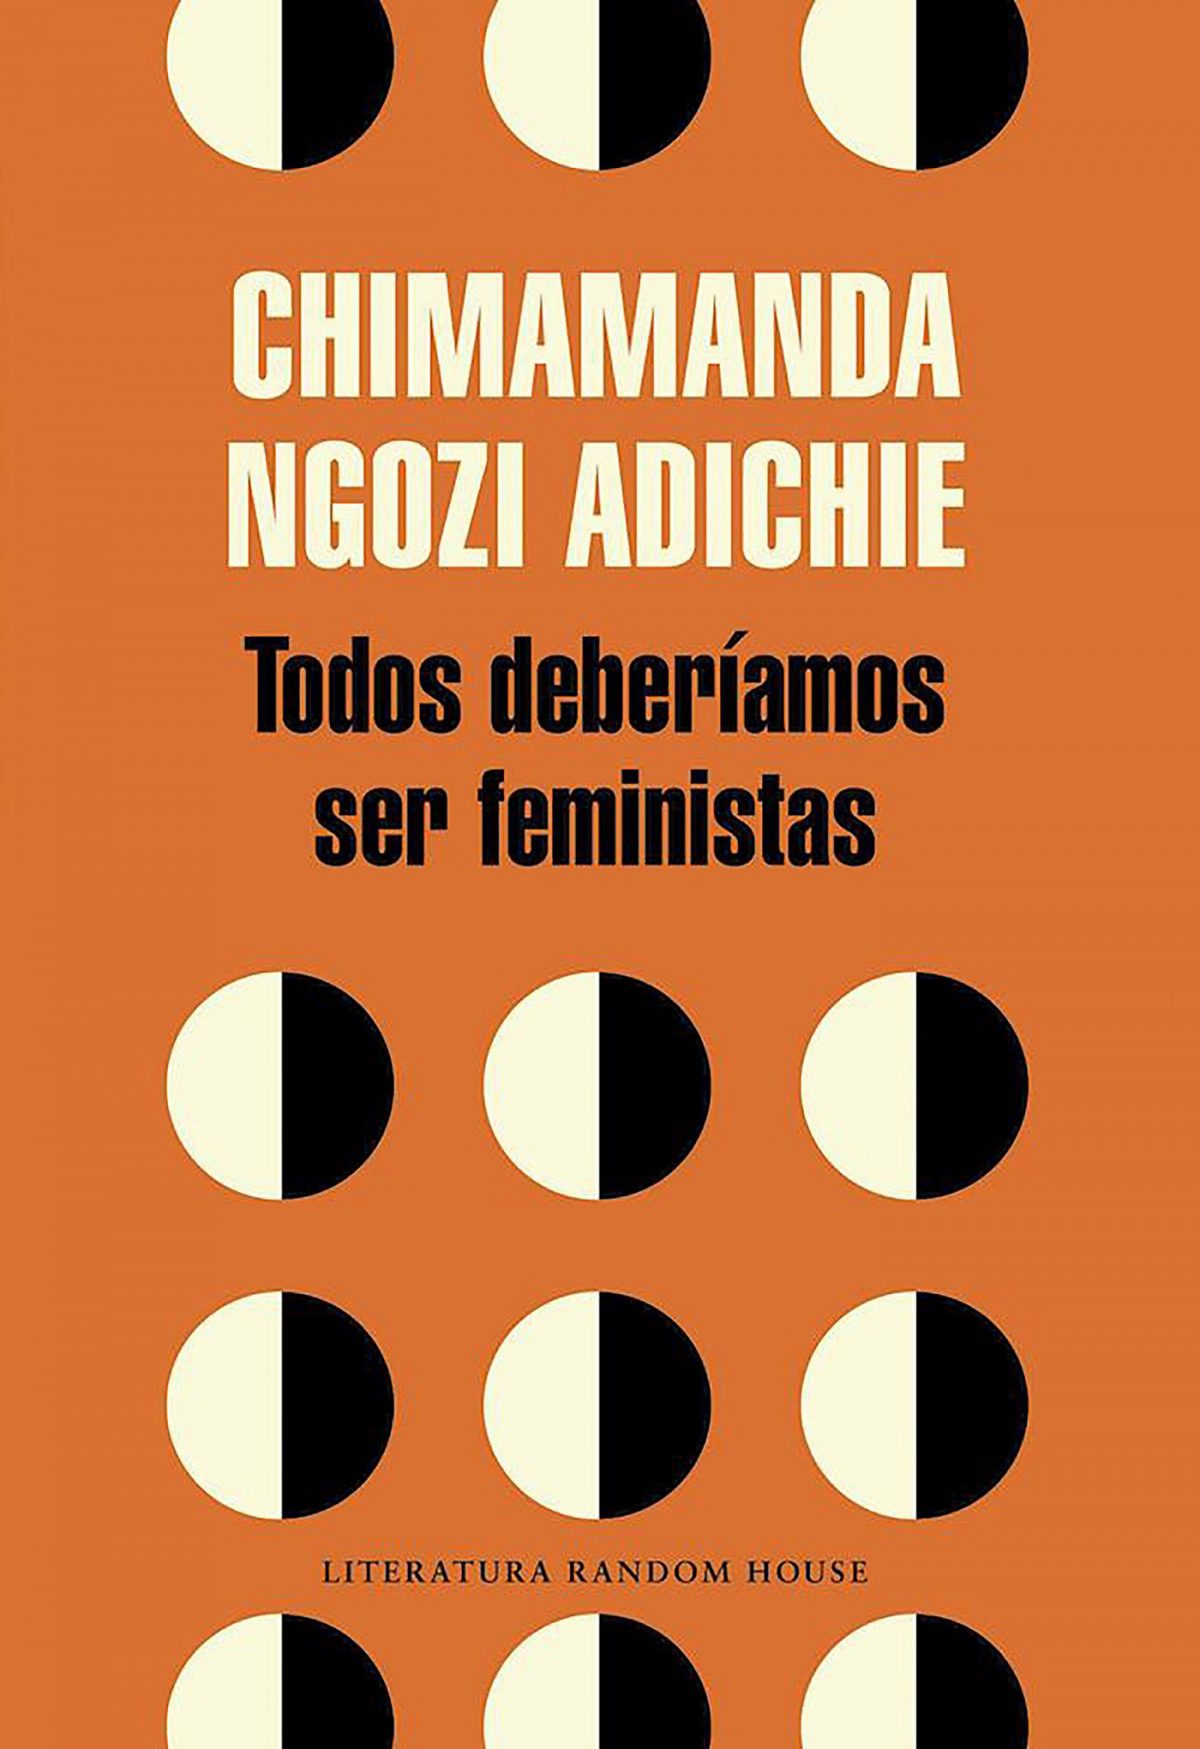 Todos deberíamos ser feministas. Chimamanda Ngozi Adichie (Invitación a la lectura V)